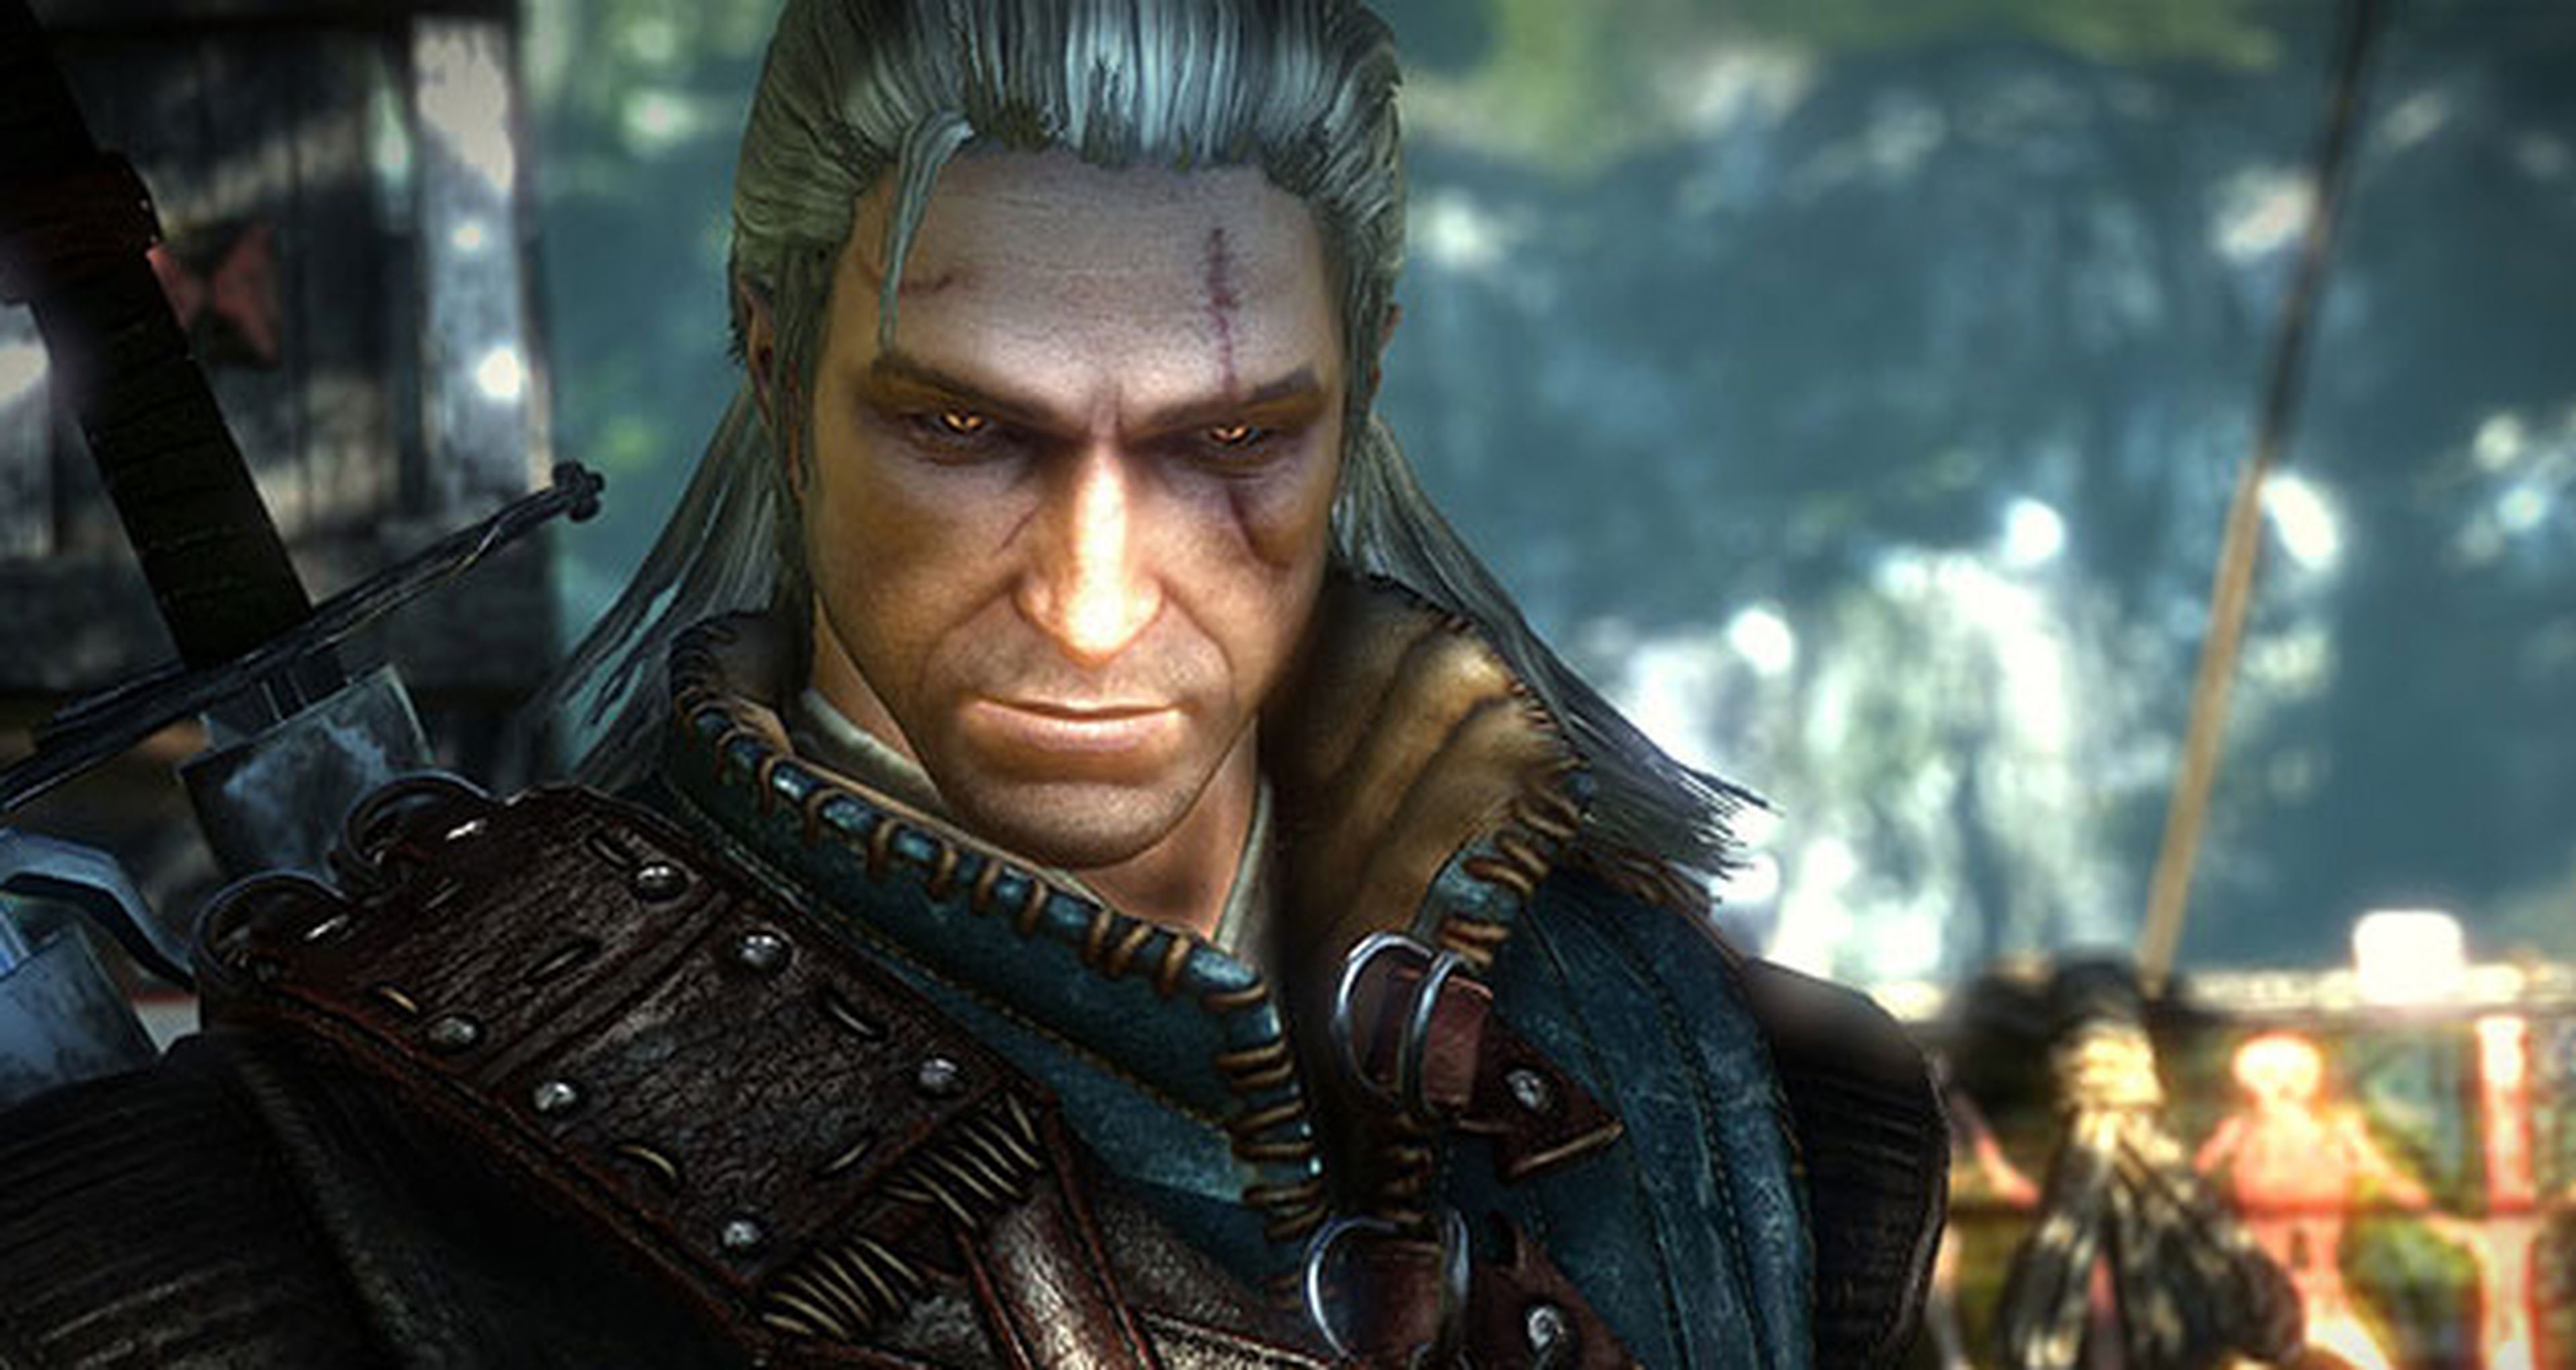 The Witcher 3 tendrá gráficos "casi idénticos" en PS4 y Xbox One